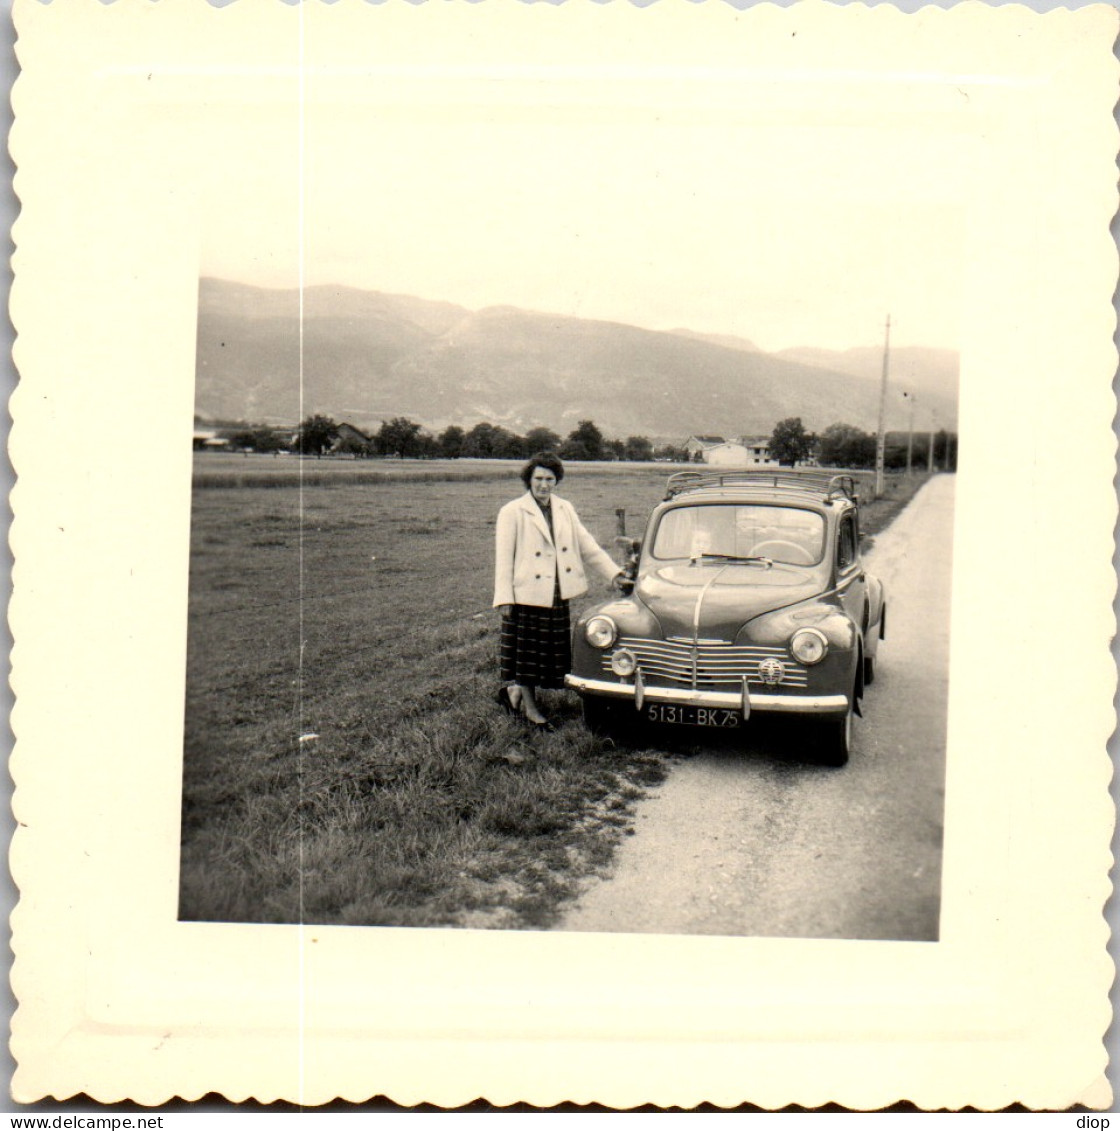 Photographie Photo Vintage Snapshot Amateur Automobile Voiture 4 Chevaux Jura  - Cars